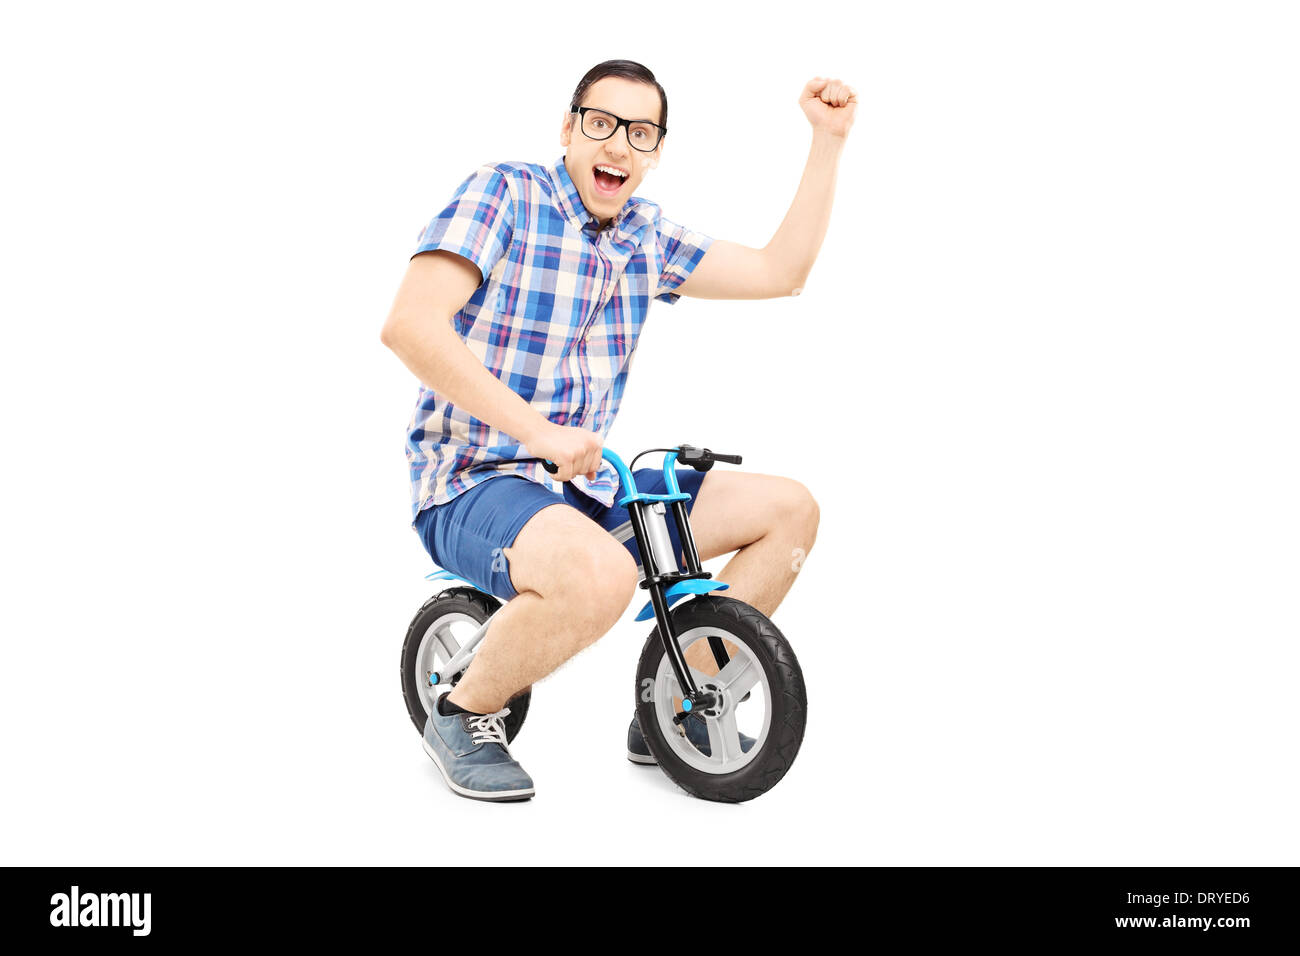 Junger Mann mit erhobener Faust mit dem kleinen Fahrrad Stockfoto